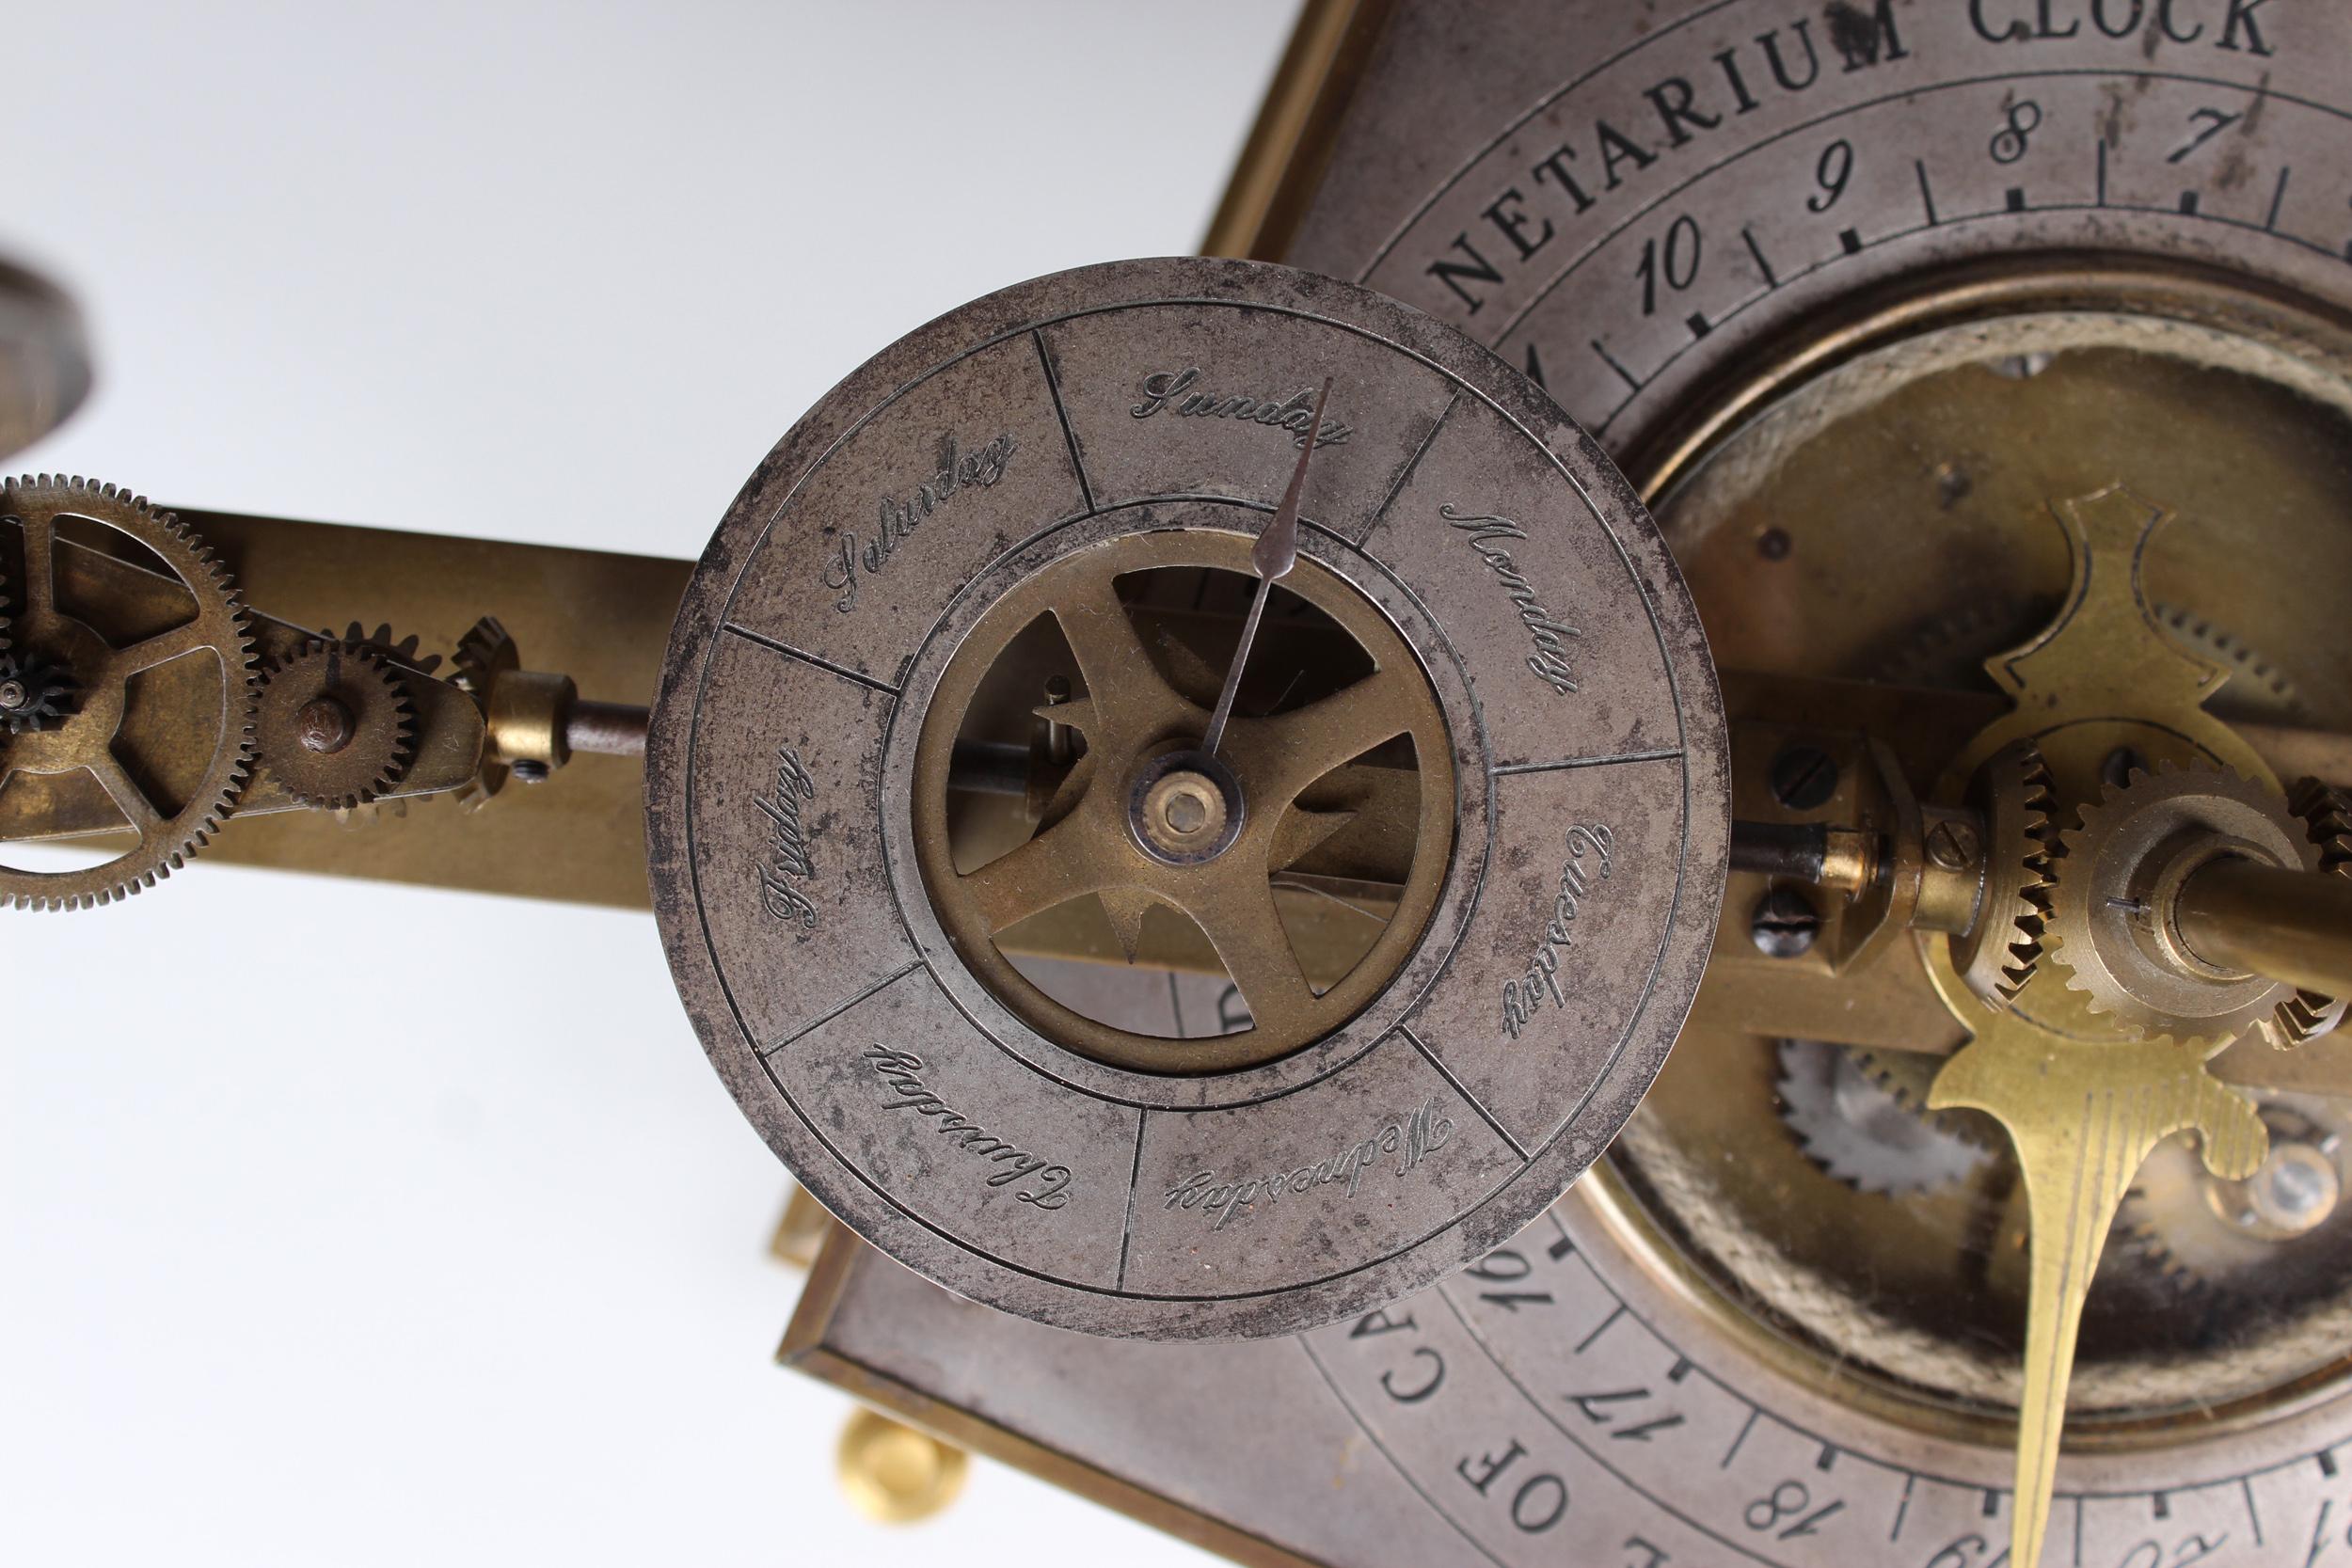 VIDEO* Planetarium, Tellurium Clock with Rotating Globe, London, Cambridge, 1925 9